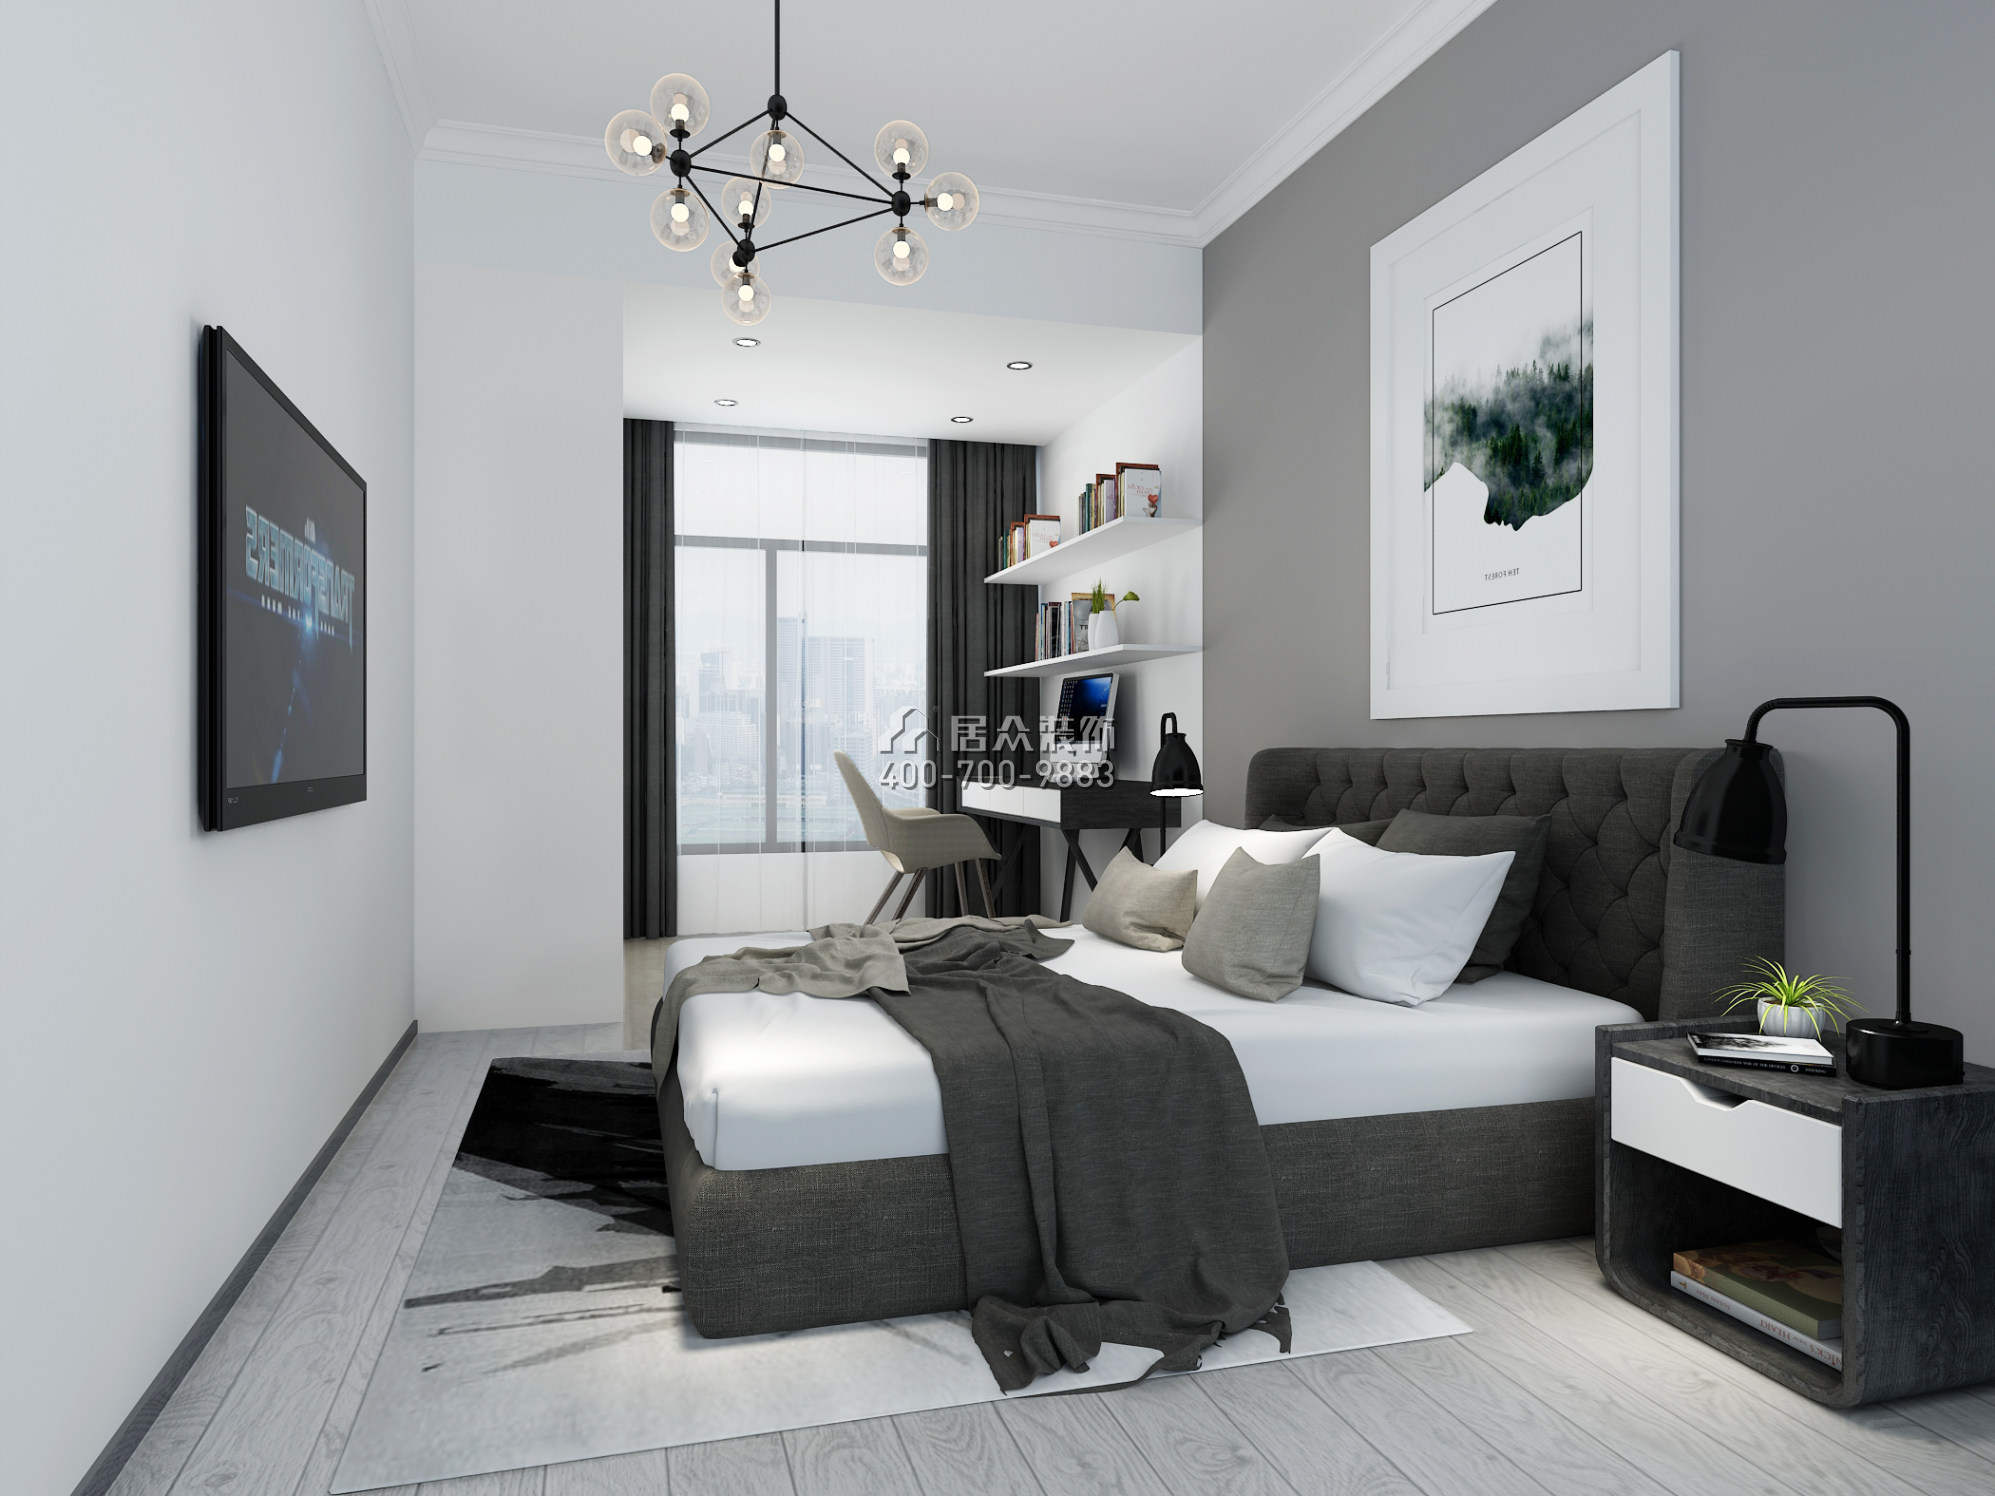 康達爾山海上園一期120平方米現代簡約風格平層戶型臥室裝修效果圖